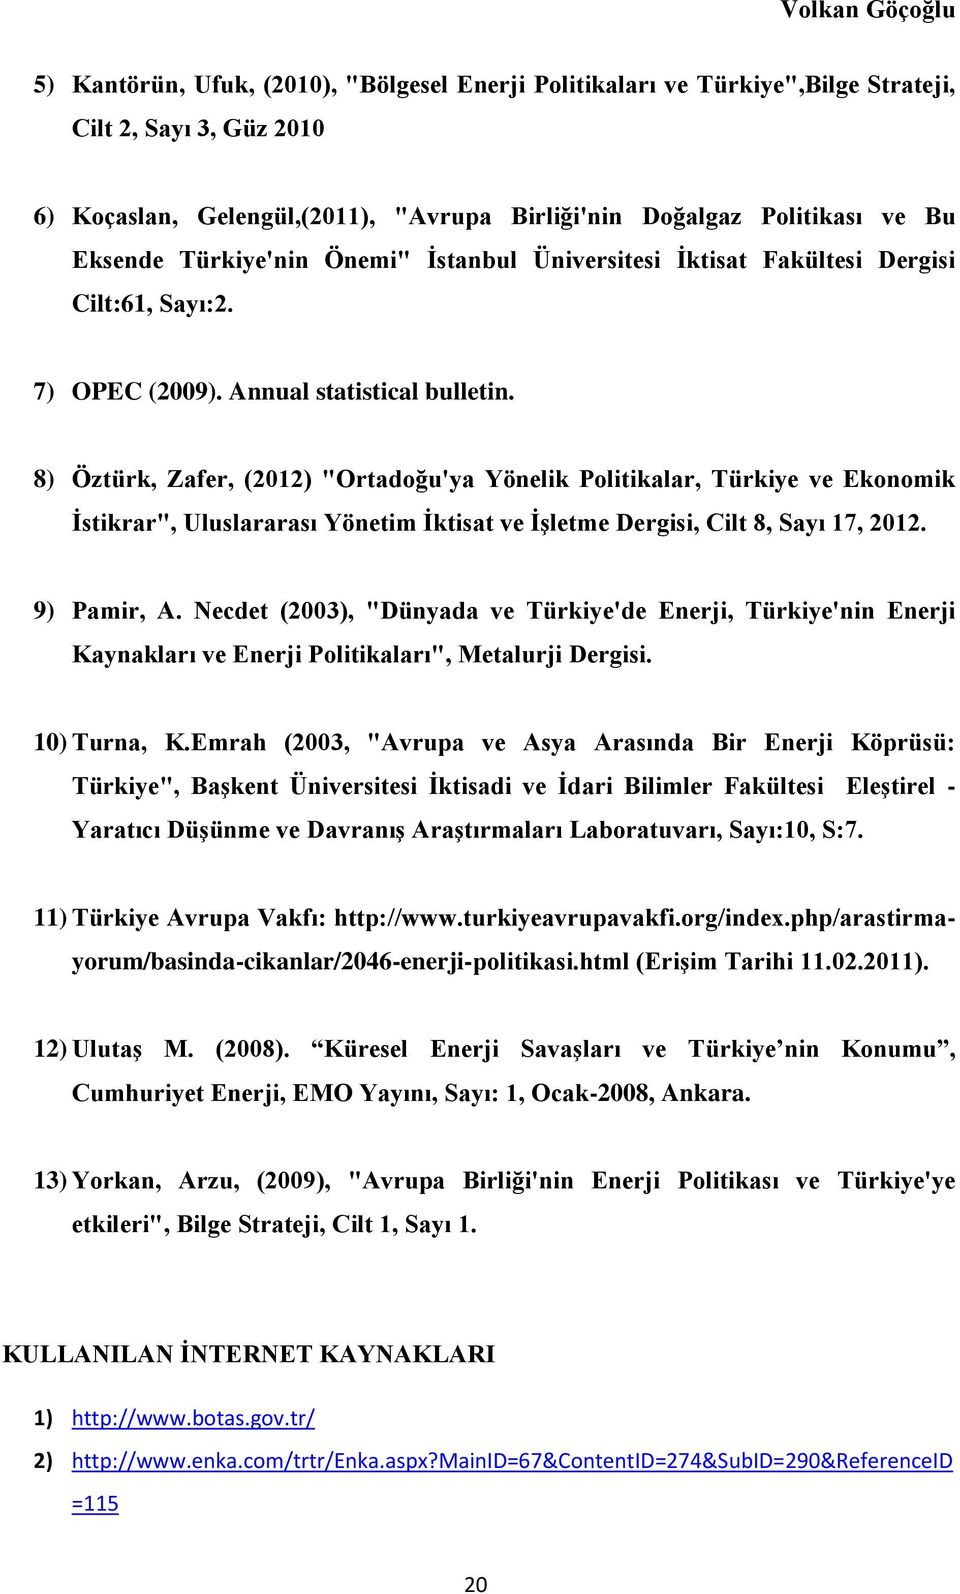 8) Öztürk, Zafer, (2012) "Ortadoğu'ya Yönelik Politikalar, Türkiye ve Ekonomik İstikrar", Uluslararası Yönetim İktisat ve İşletme Dergisi, Cilt 8, Sayı 17, 2012. 9) Pamir, A.